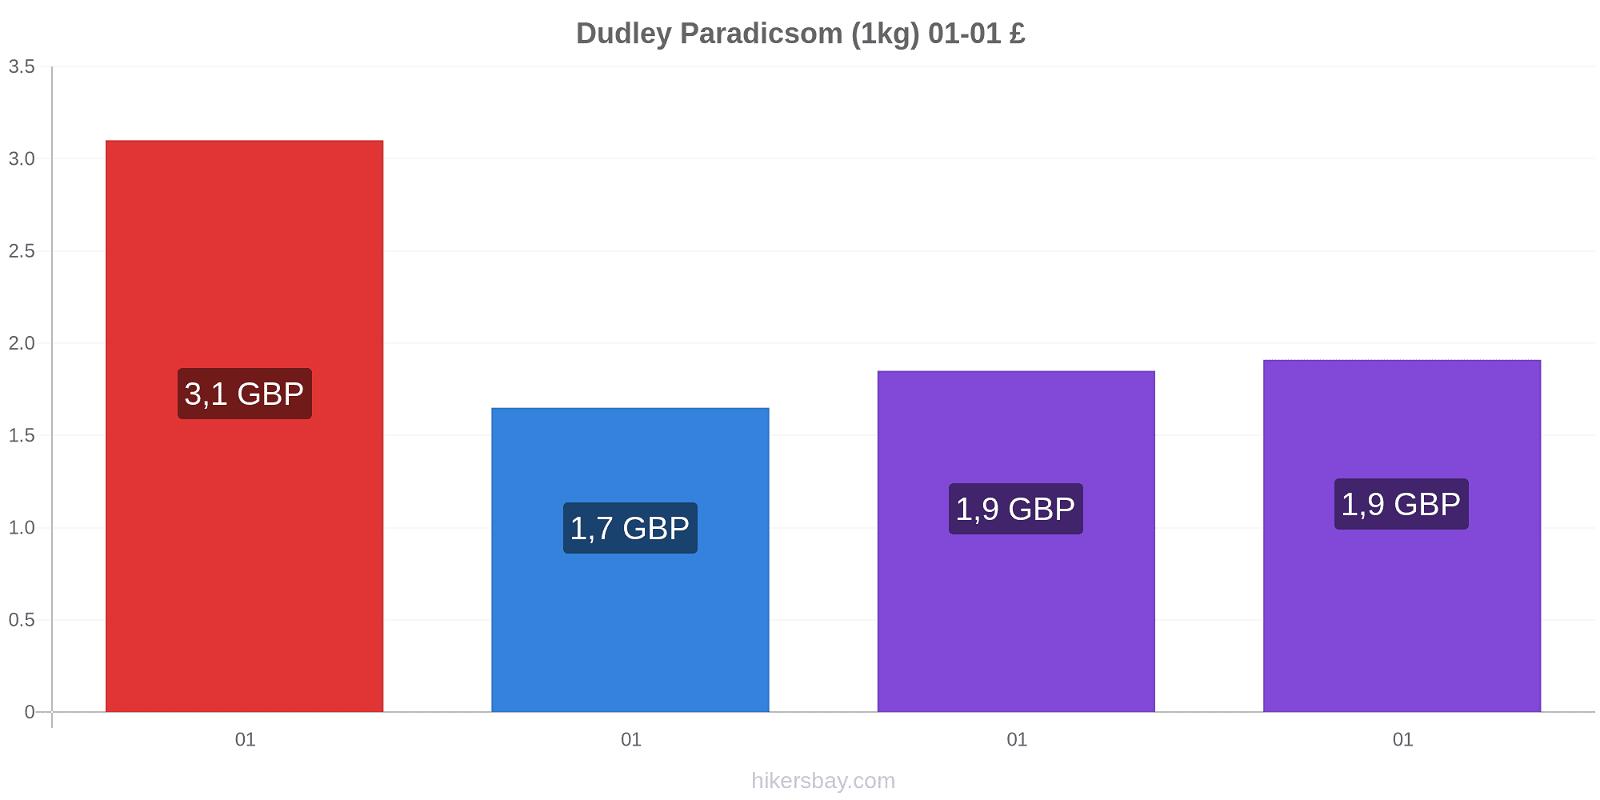 Dudley árváltozások Paradicsom (1kg) hikersbay.com